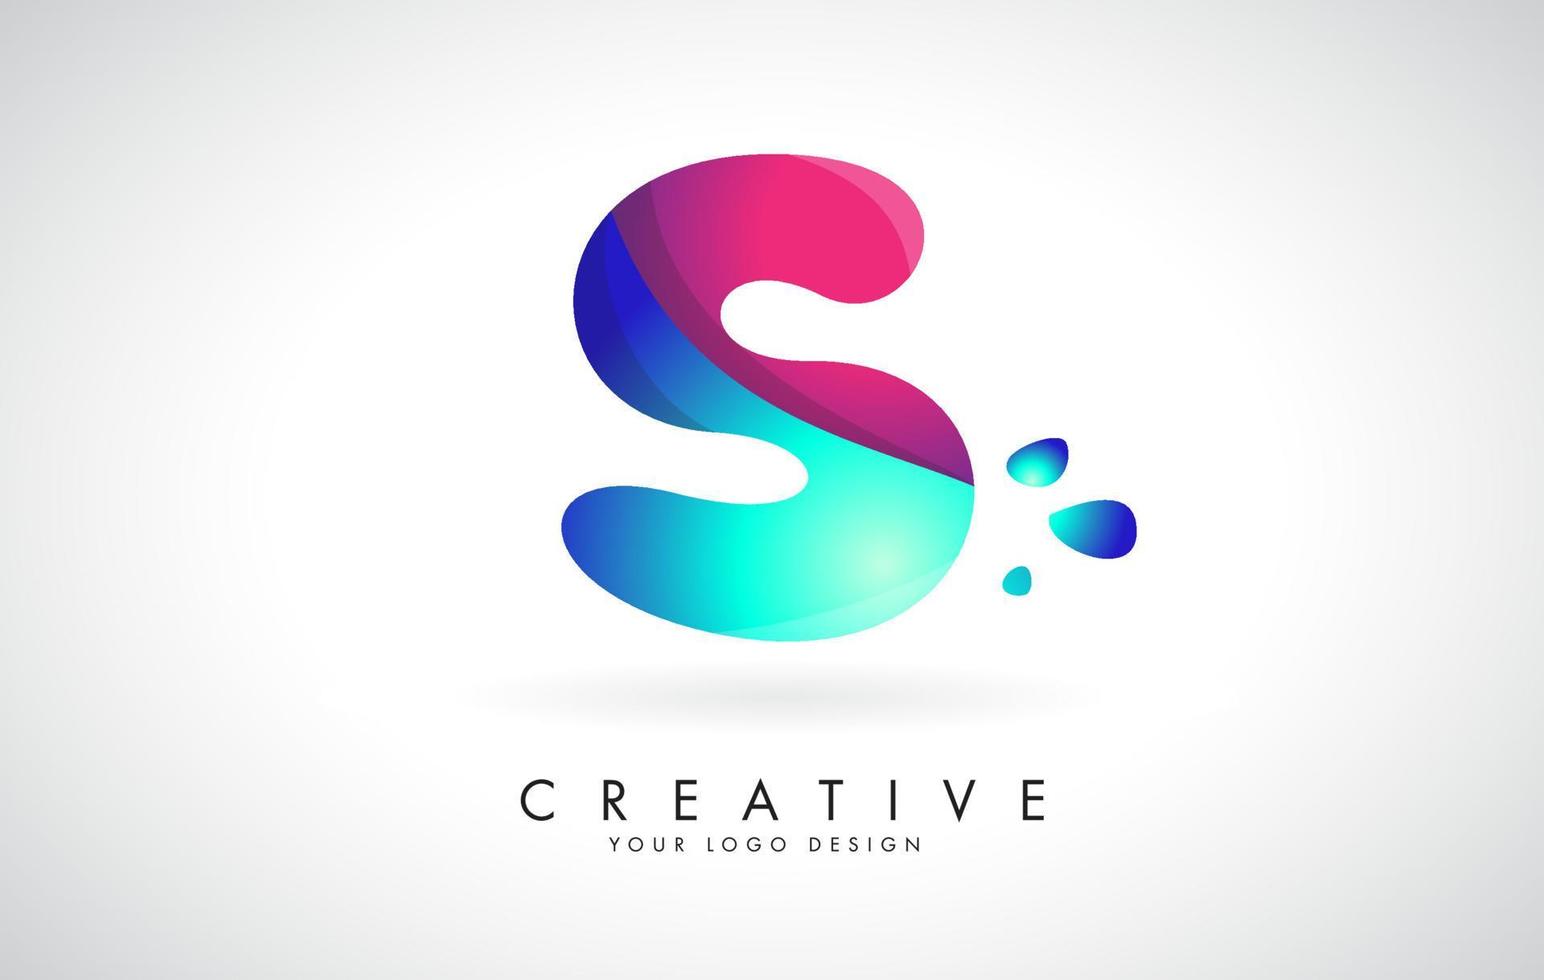 design del logo della lettera s creativa blu e rosa con punti. intrattenimento aziendale amichevole, media, tecnologia, design vettoriale aziendale digitale con gocce.